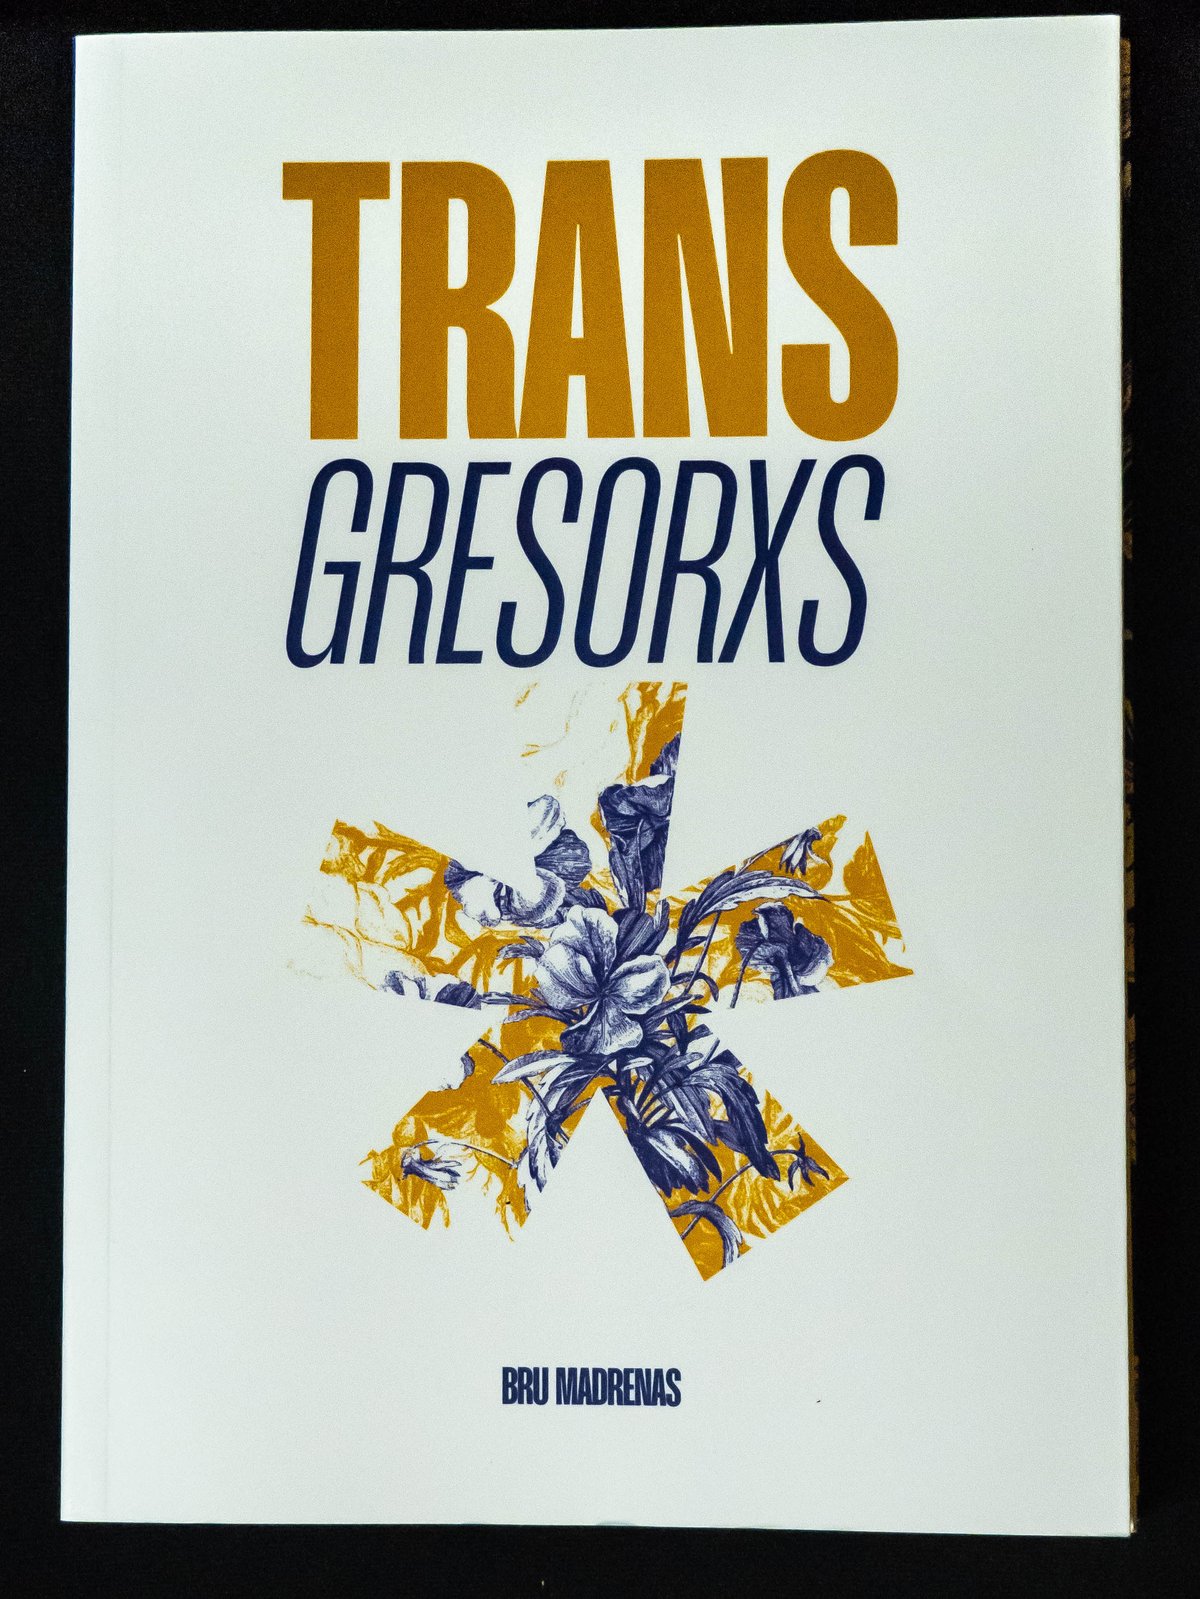 Image of Libro en CASTELLANO "Transgresorxs"